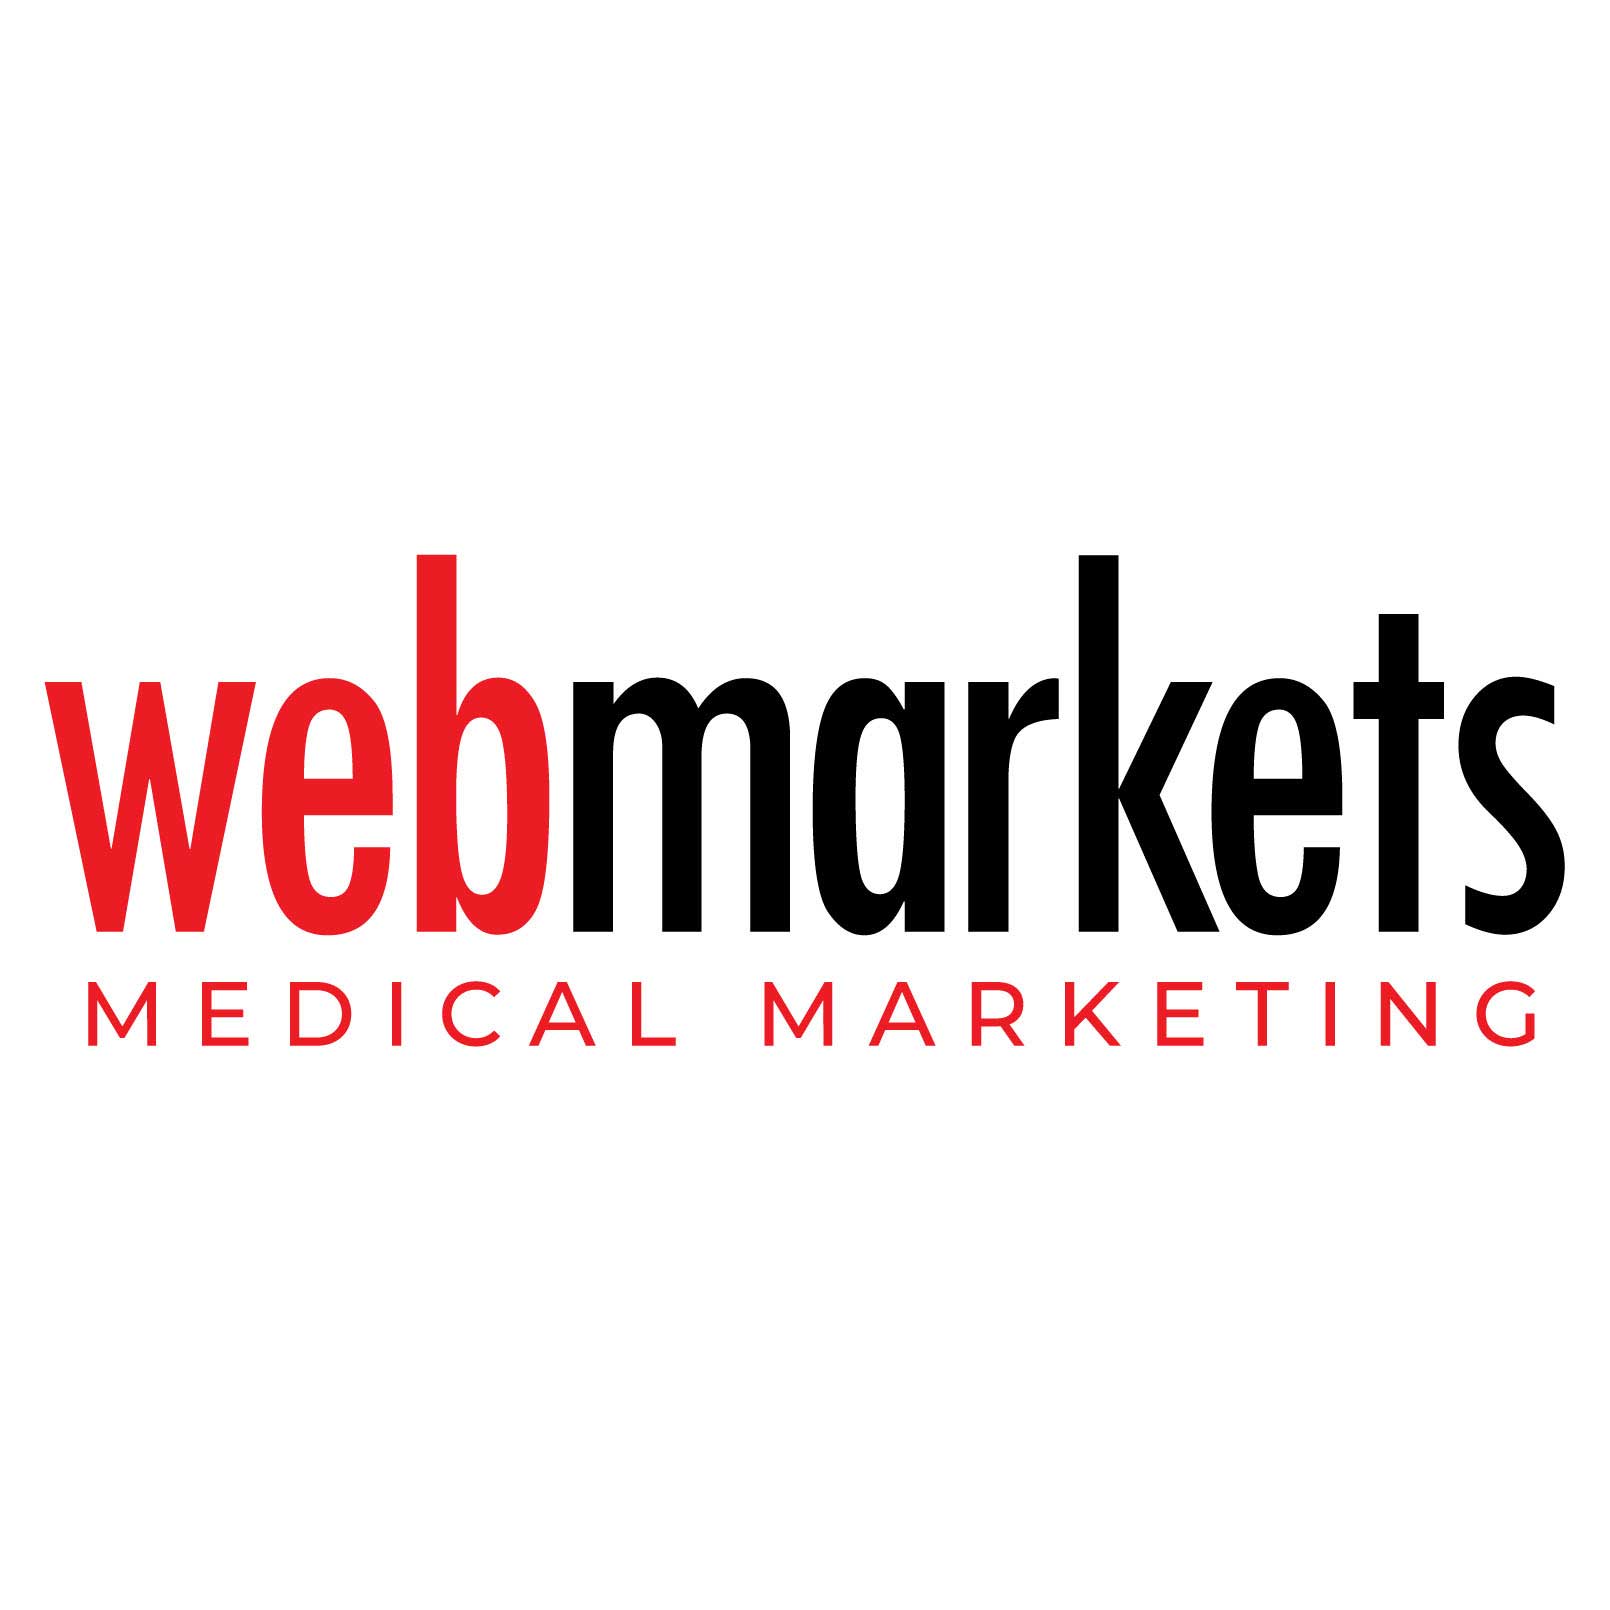 webmarkets medical marketing boise angels home